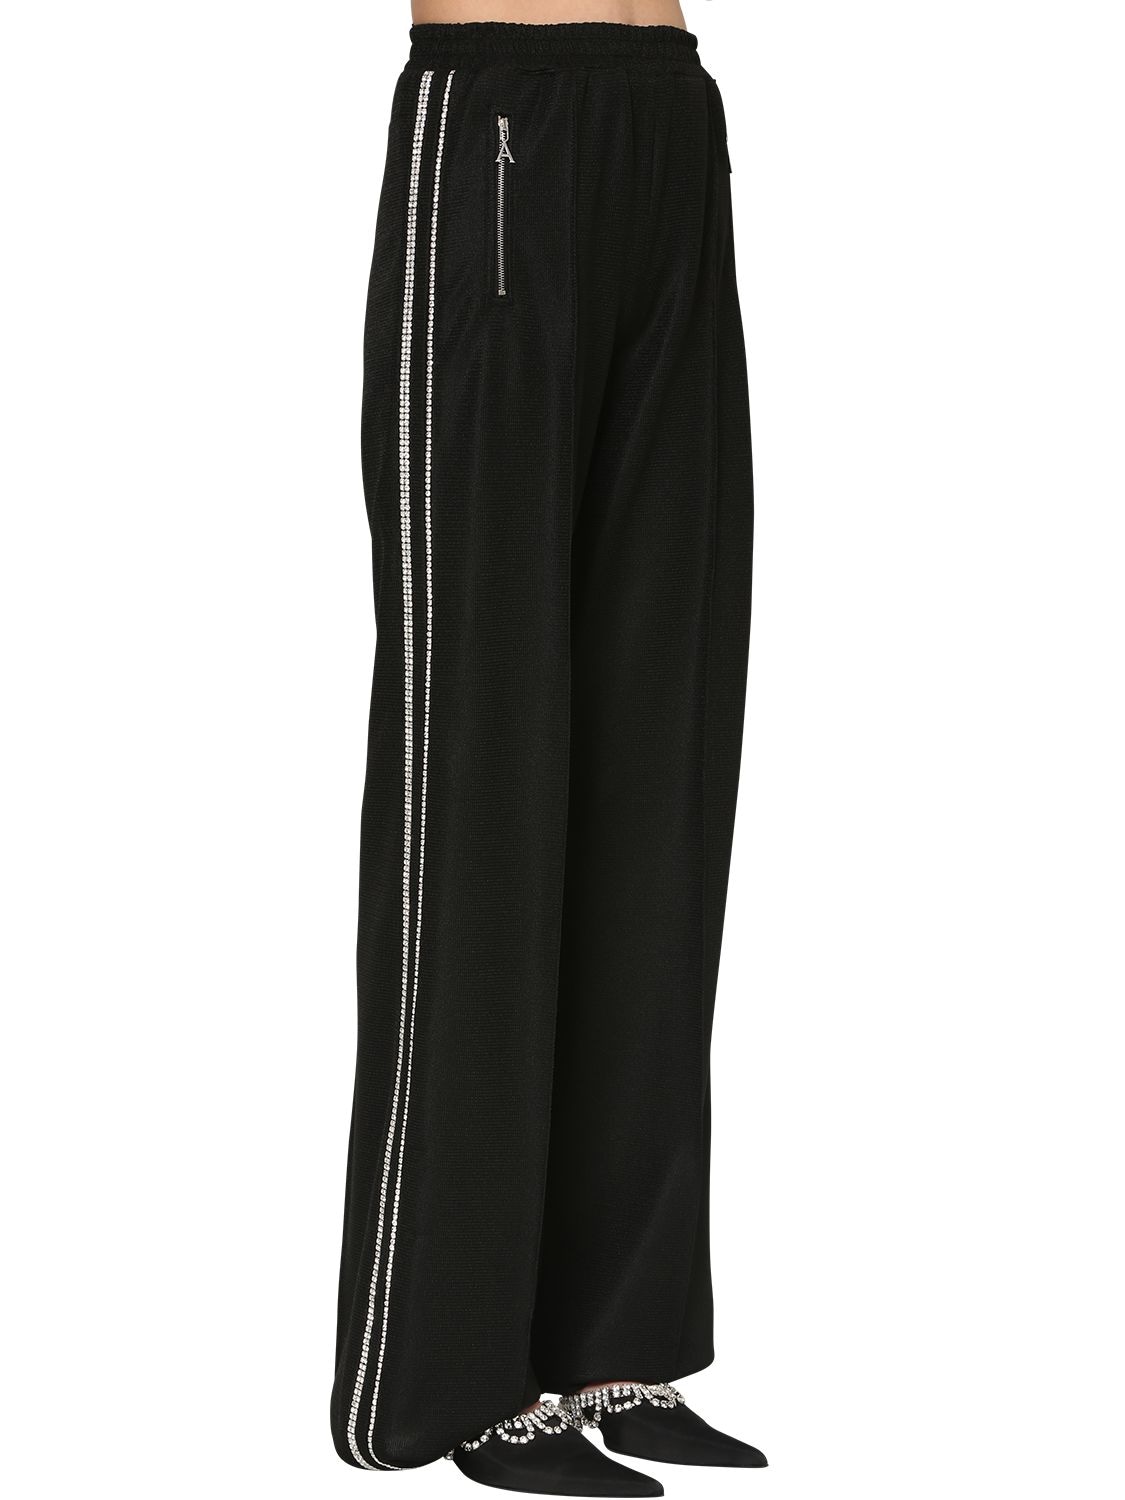 AREA 带装饰科技面料运动裤,70I0XI017-QKXBQ0S1